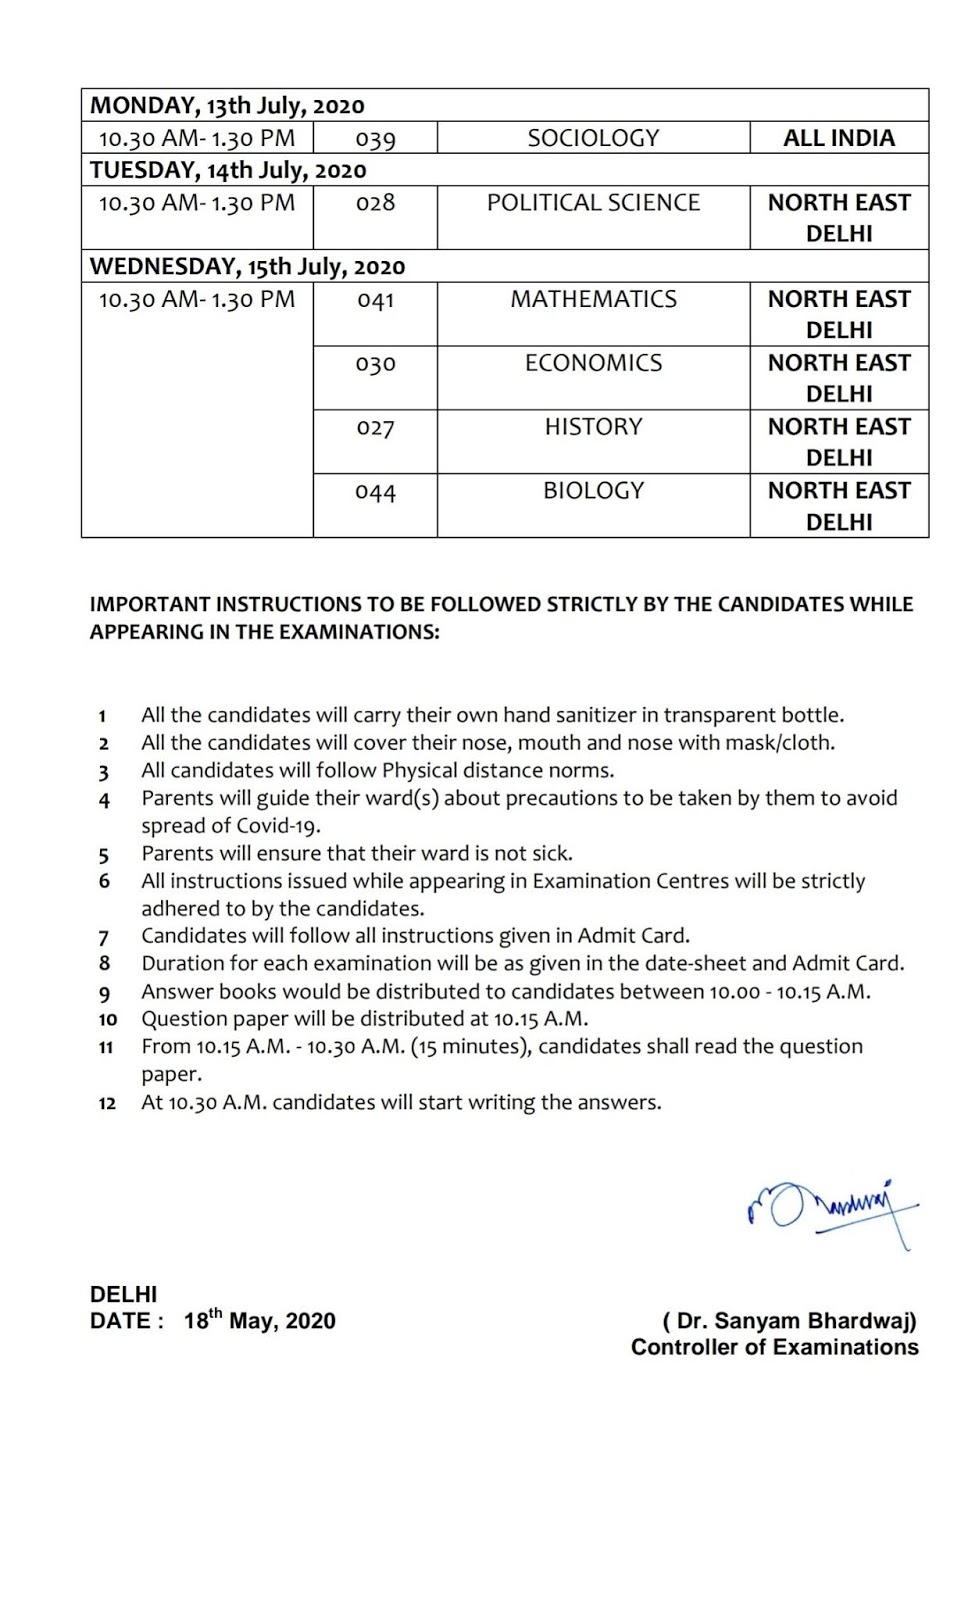 CBSE Re-scheduled examinations